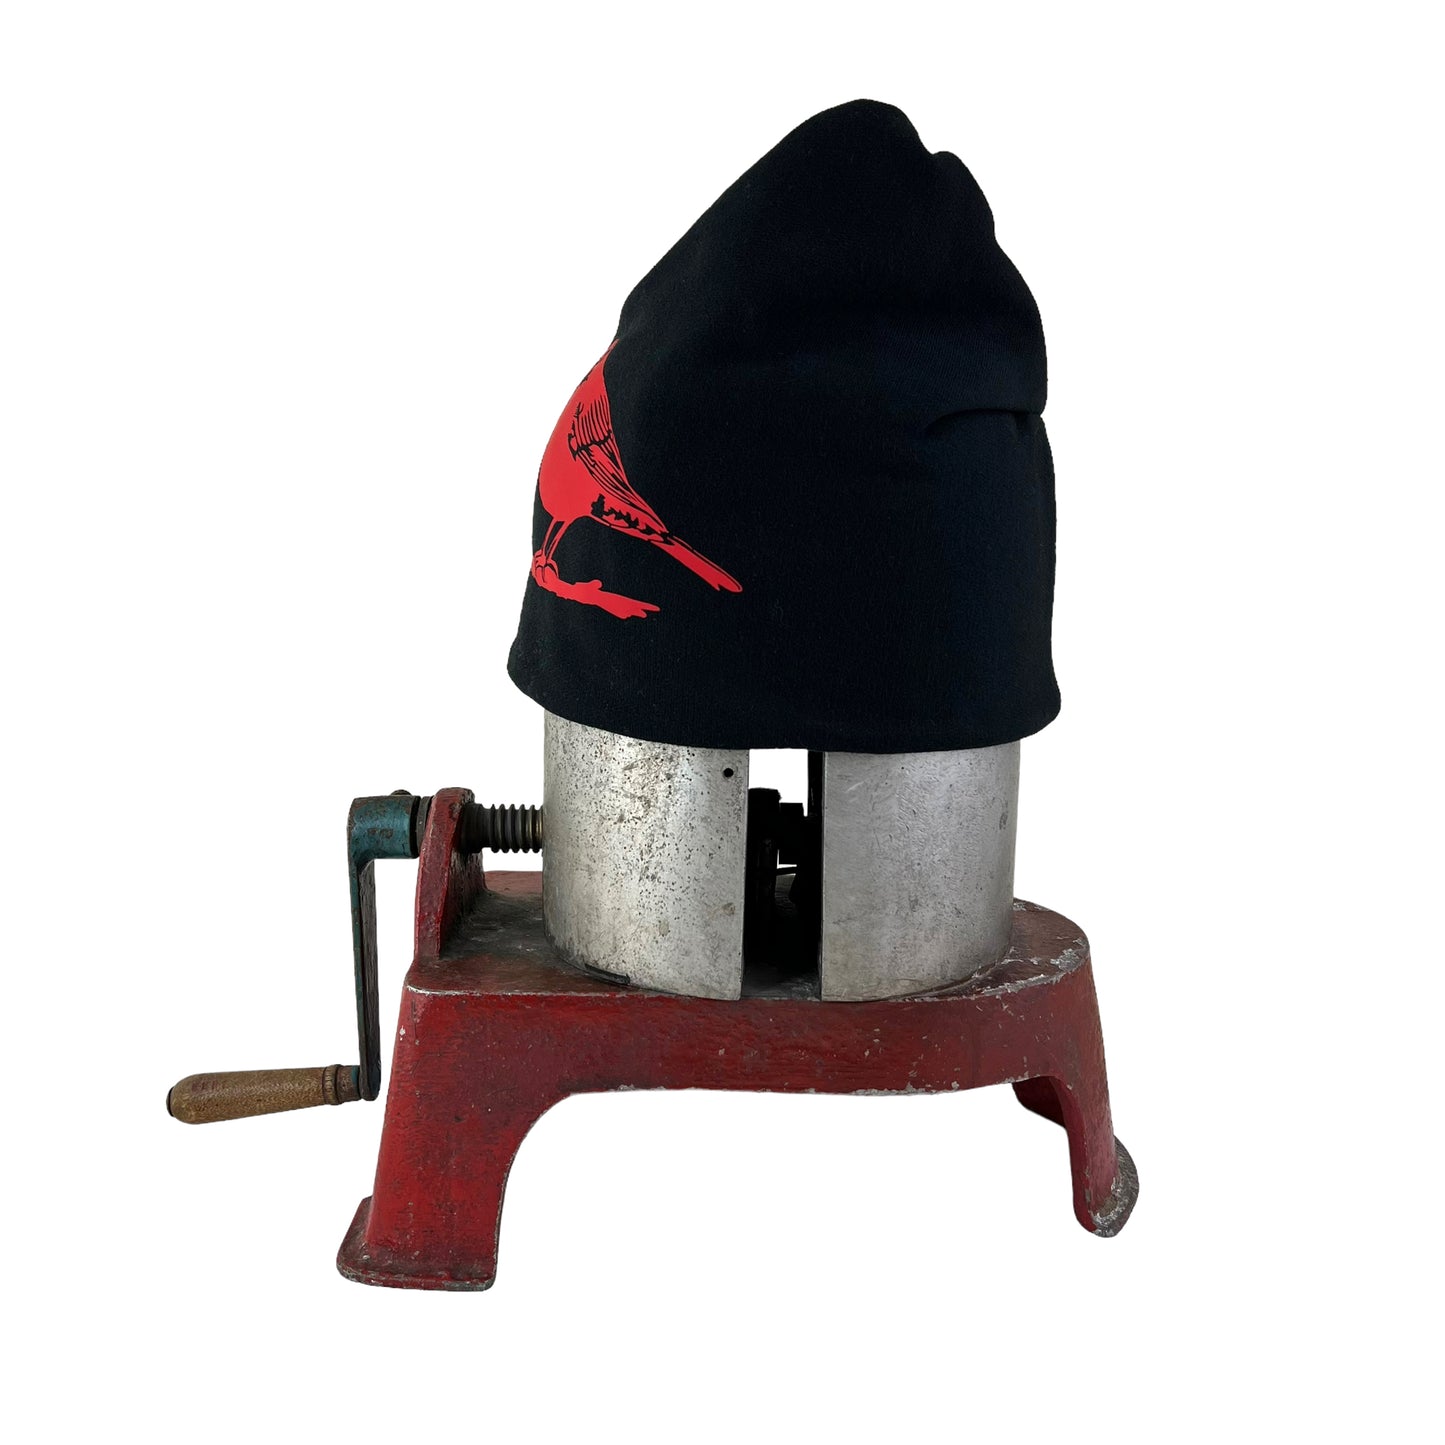 Robin Slouchy Bird Toque Hat Black Red